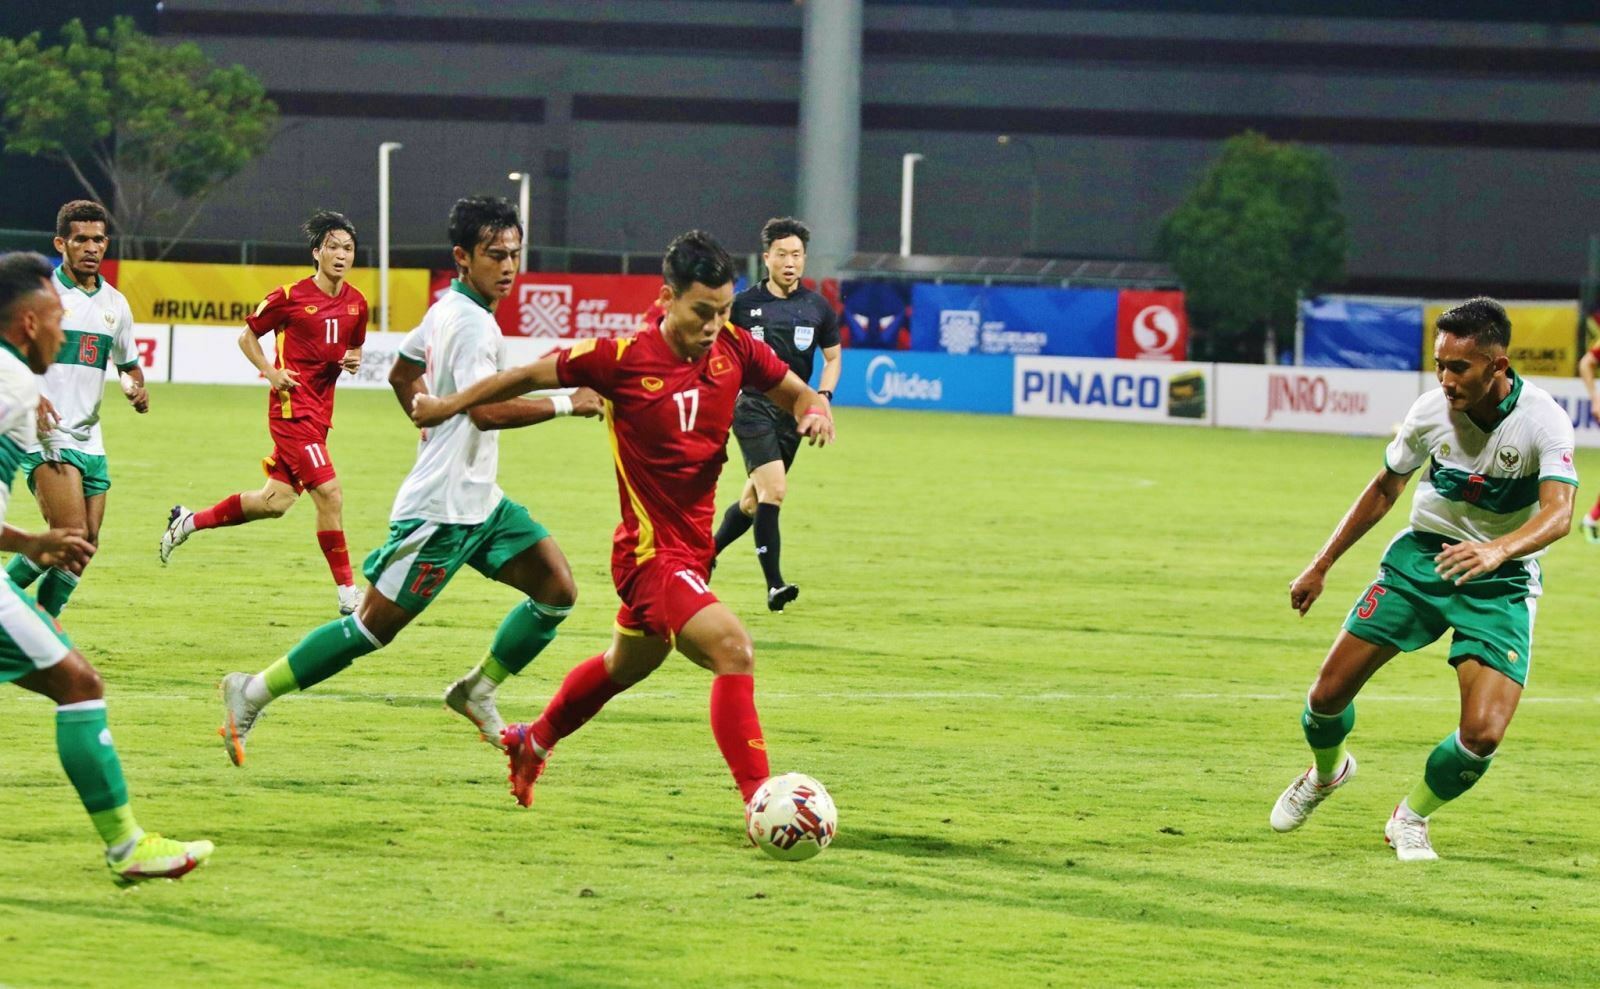 Tuyển Việt Nam và tuyển Indonesia cầm chân nhau 0 - 0, vé bán kết bảng B chờ lượt trận cuối